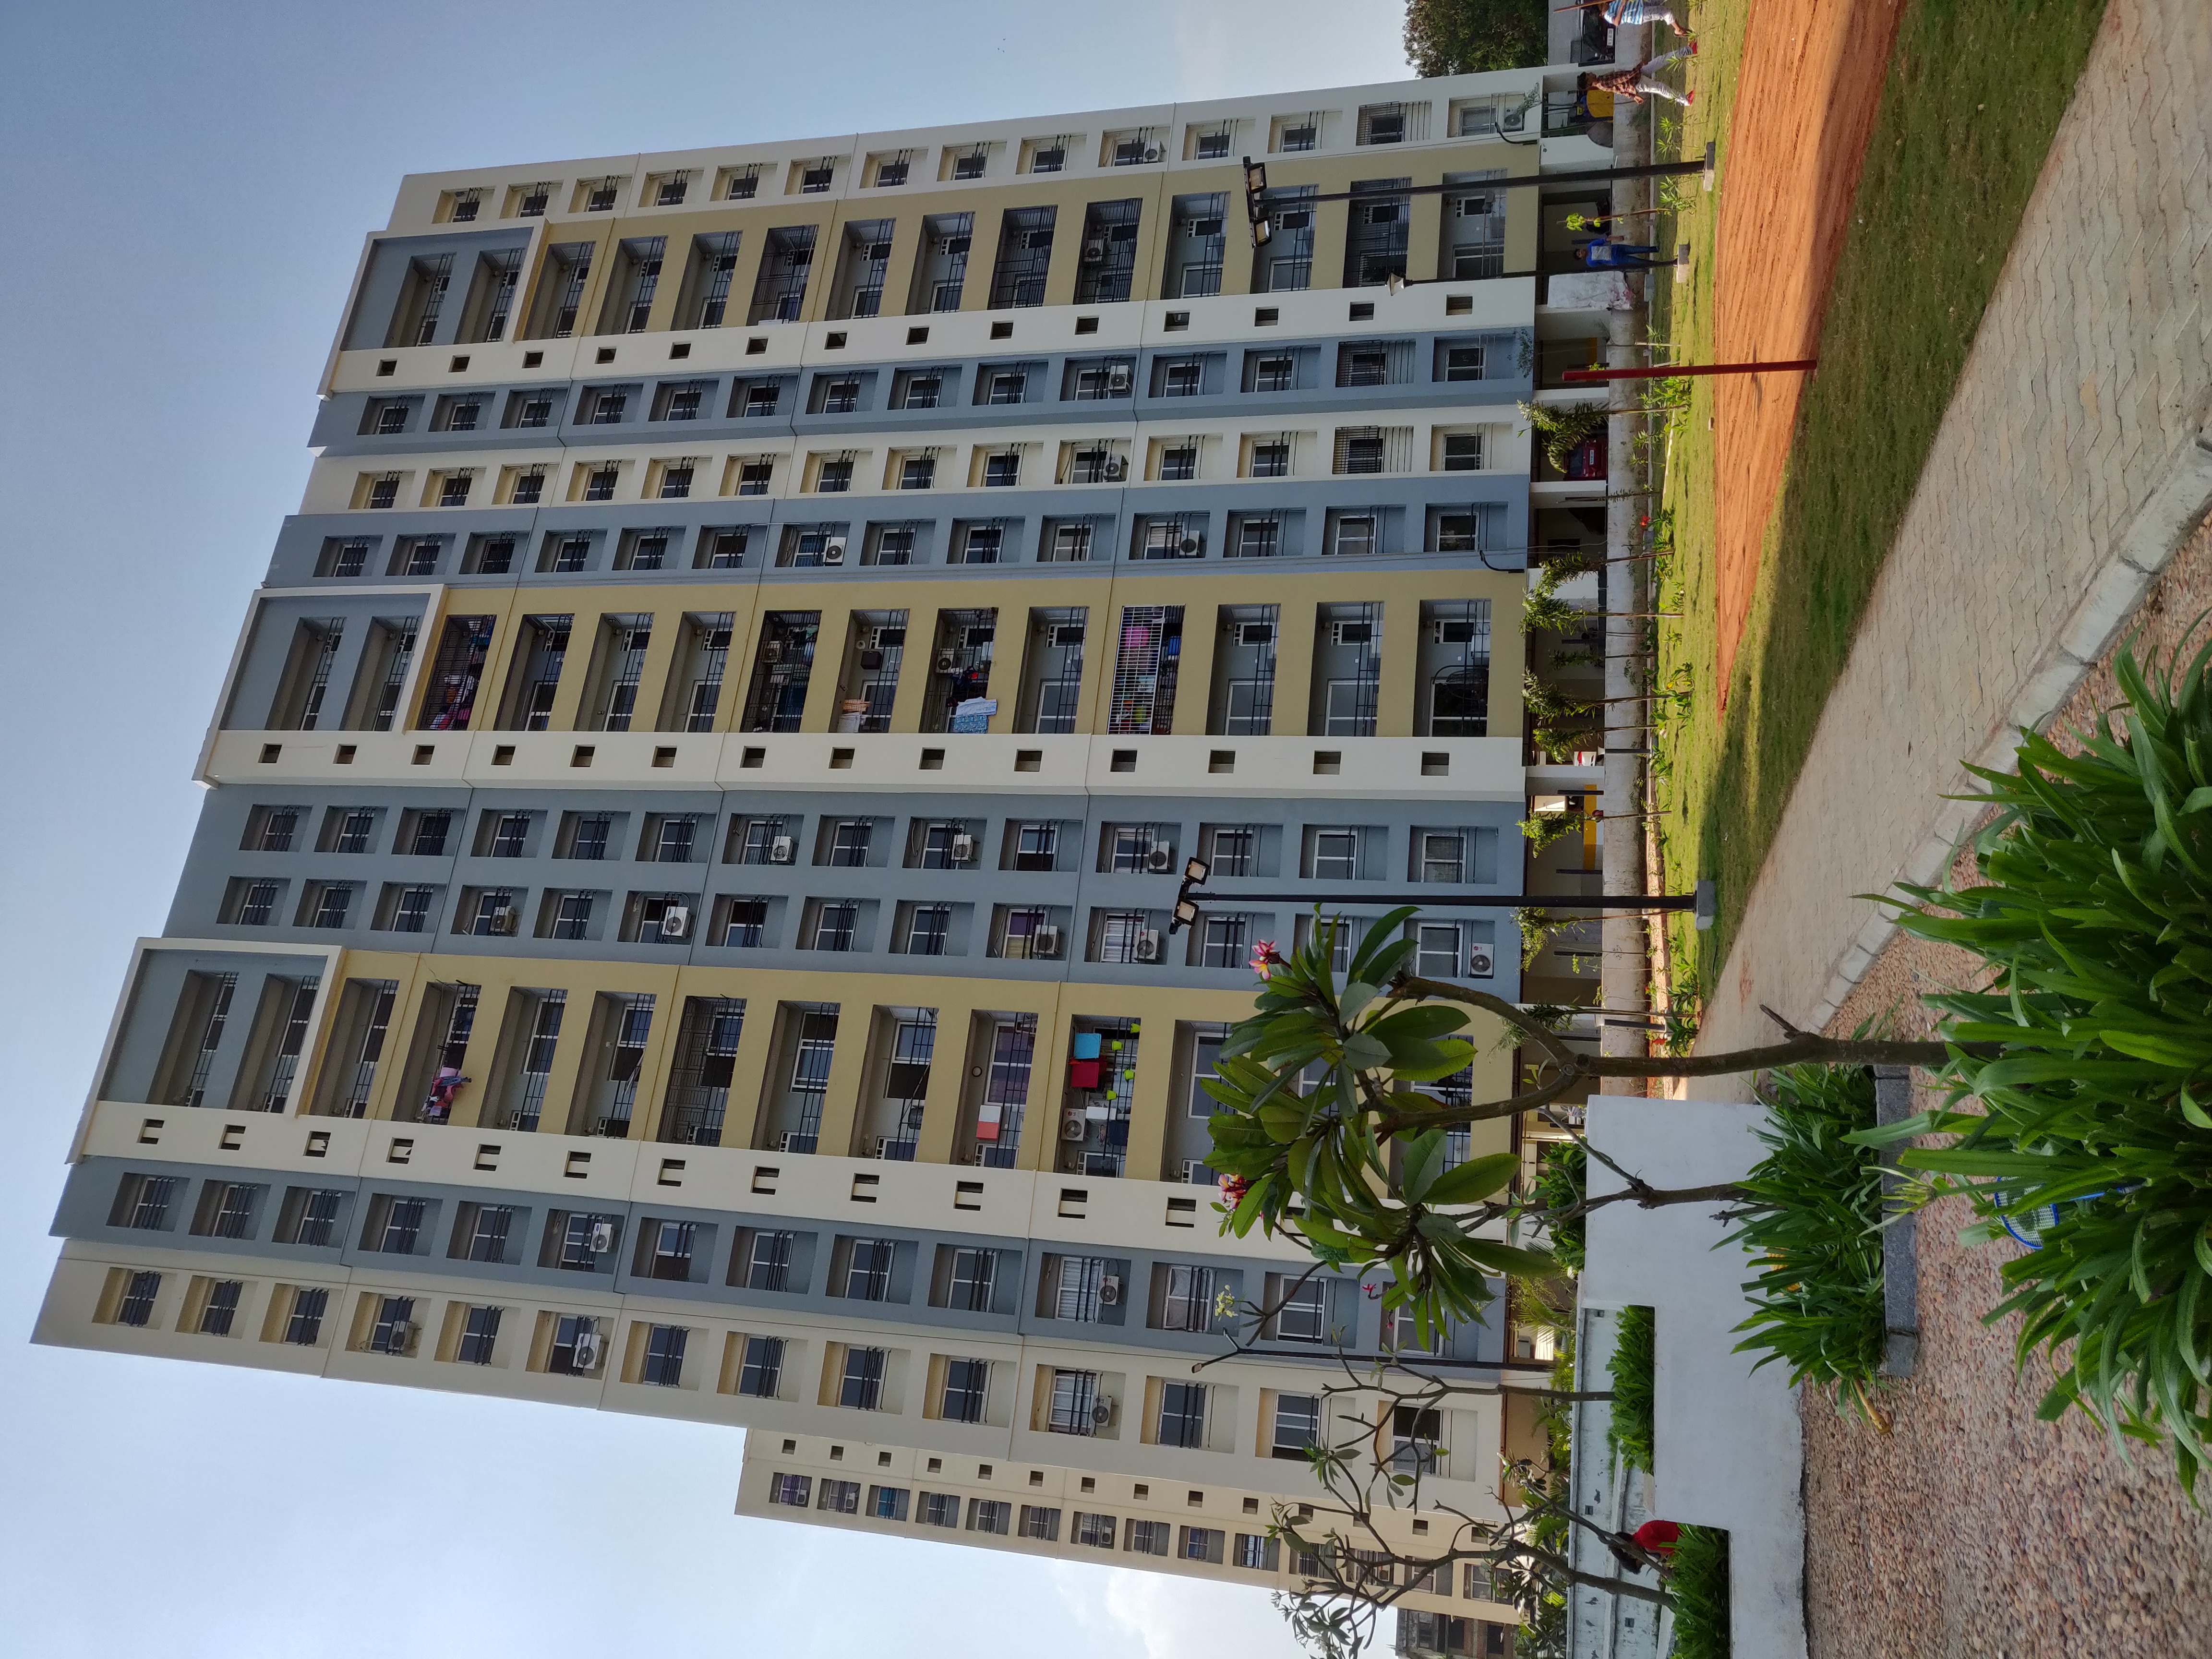 2 bhk apartments in omr - KG Builders